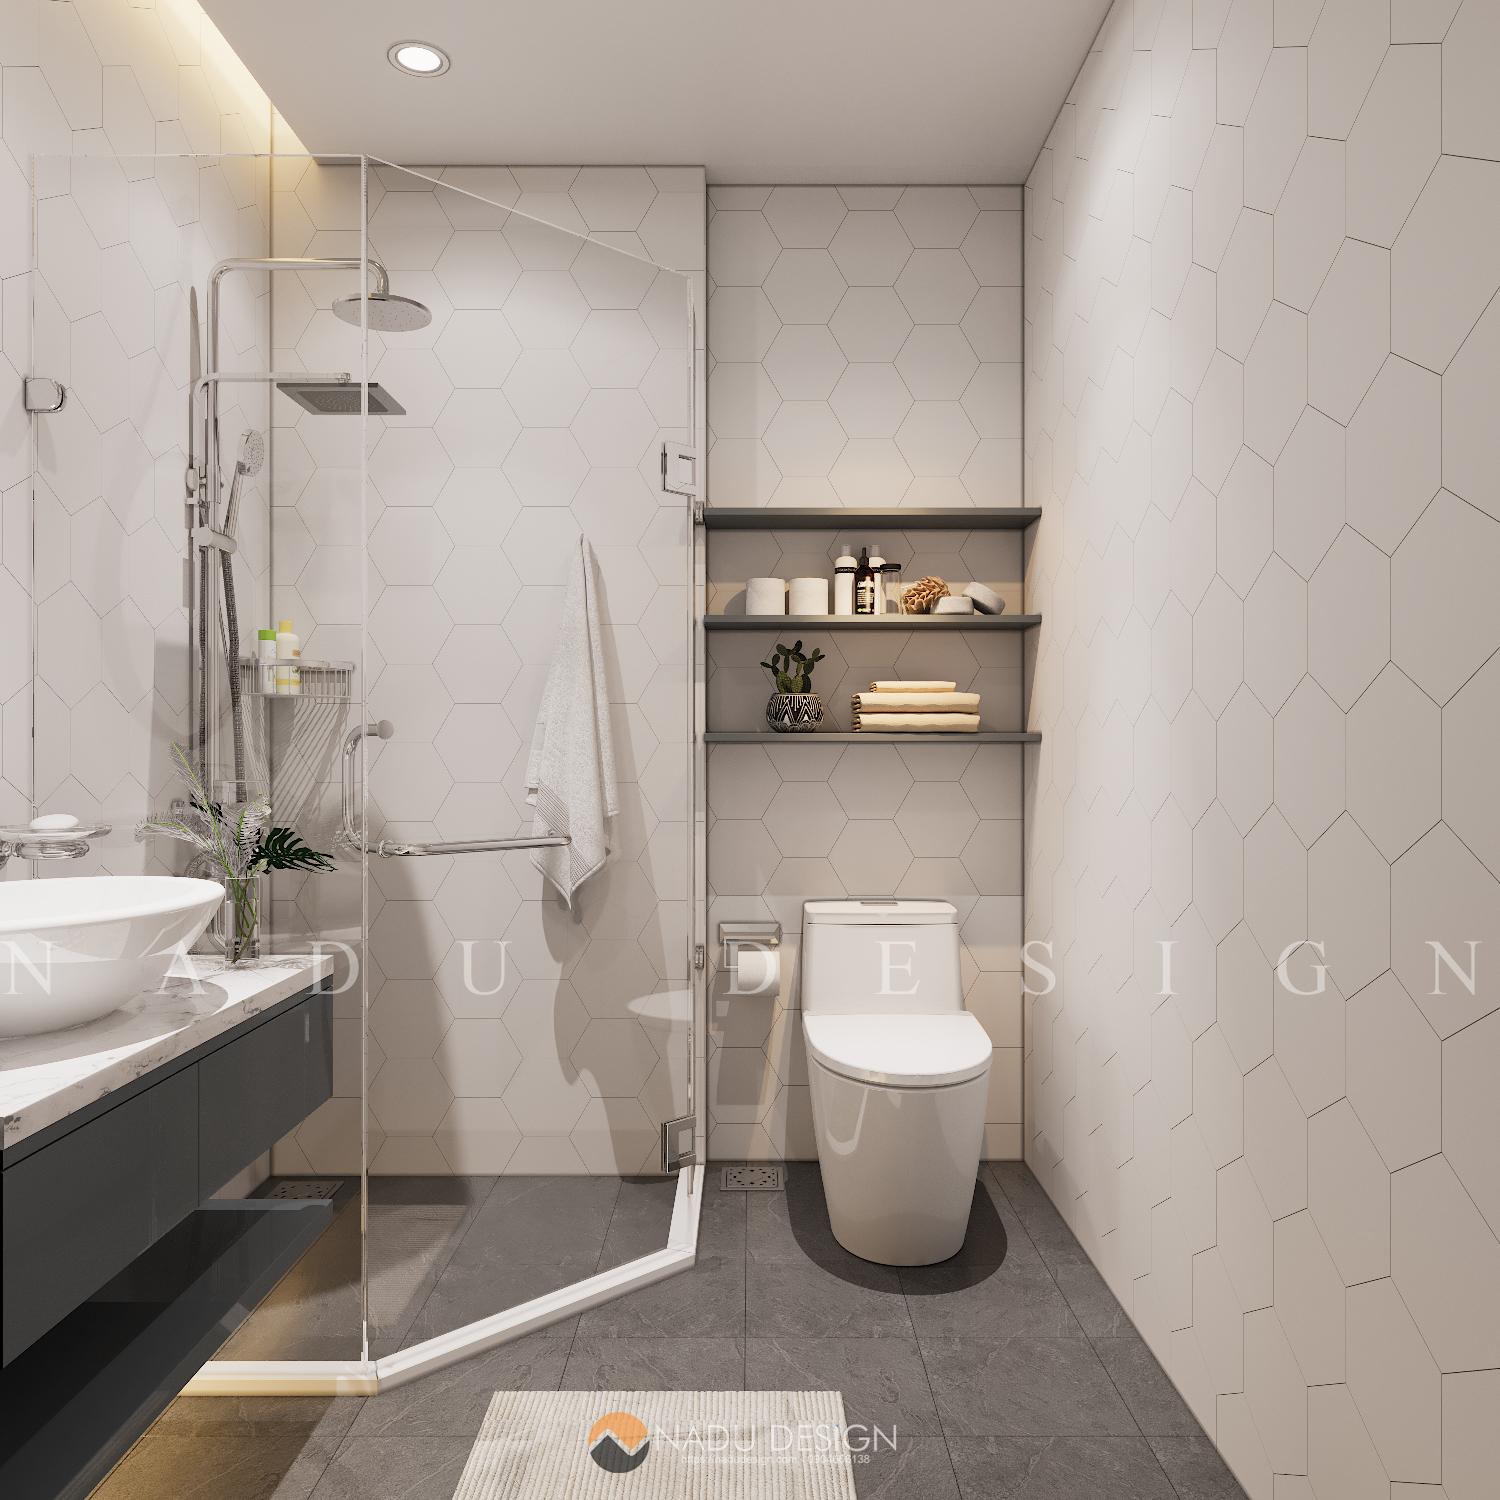 Thiết kế phòng tắm 4m2 thông minh và sáng tạo là gì bạn đang cần tìm kiếm, để tận hưởng những giây phút thư giãn sau một ngày làm việc mệt mỏi. Hình ảnh liên quan đến từ khóa này sẽ giới thiệu cho bạn những ý tưởng mới nhất về thiết kế phòng tắm.